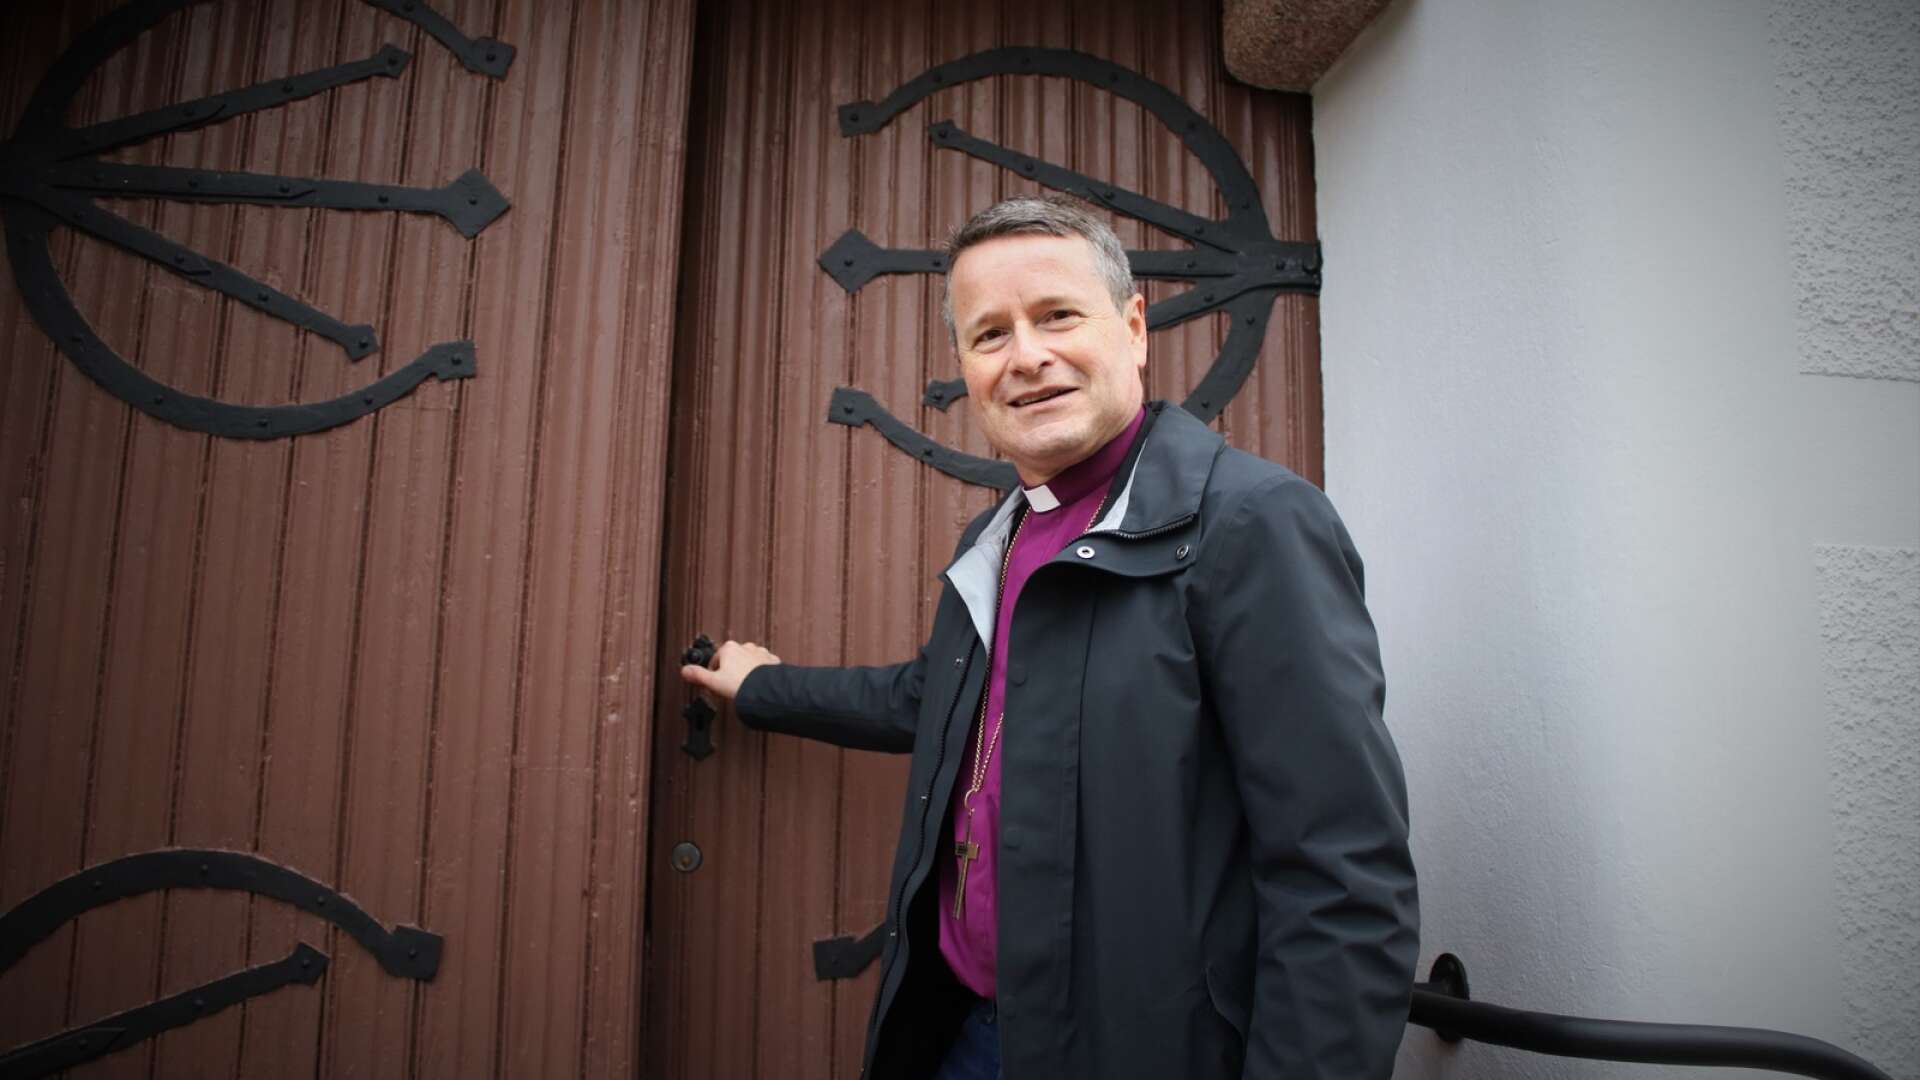 Biskop Sören Dalevi gästar Åmåls församling under onsdagen. Här i samband med 800-årsjubileet i Edsleskog.